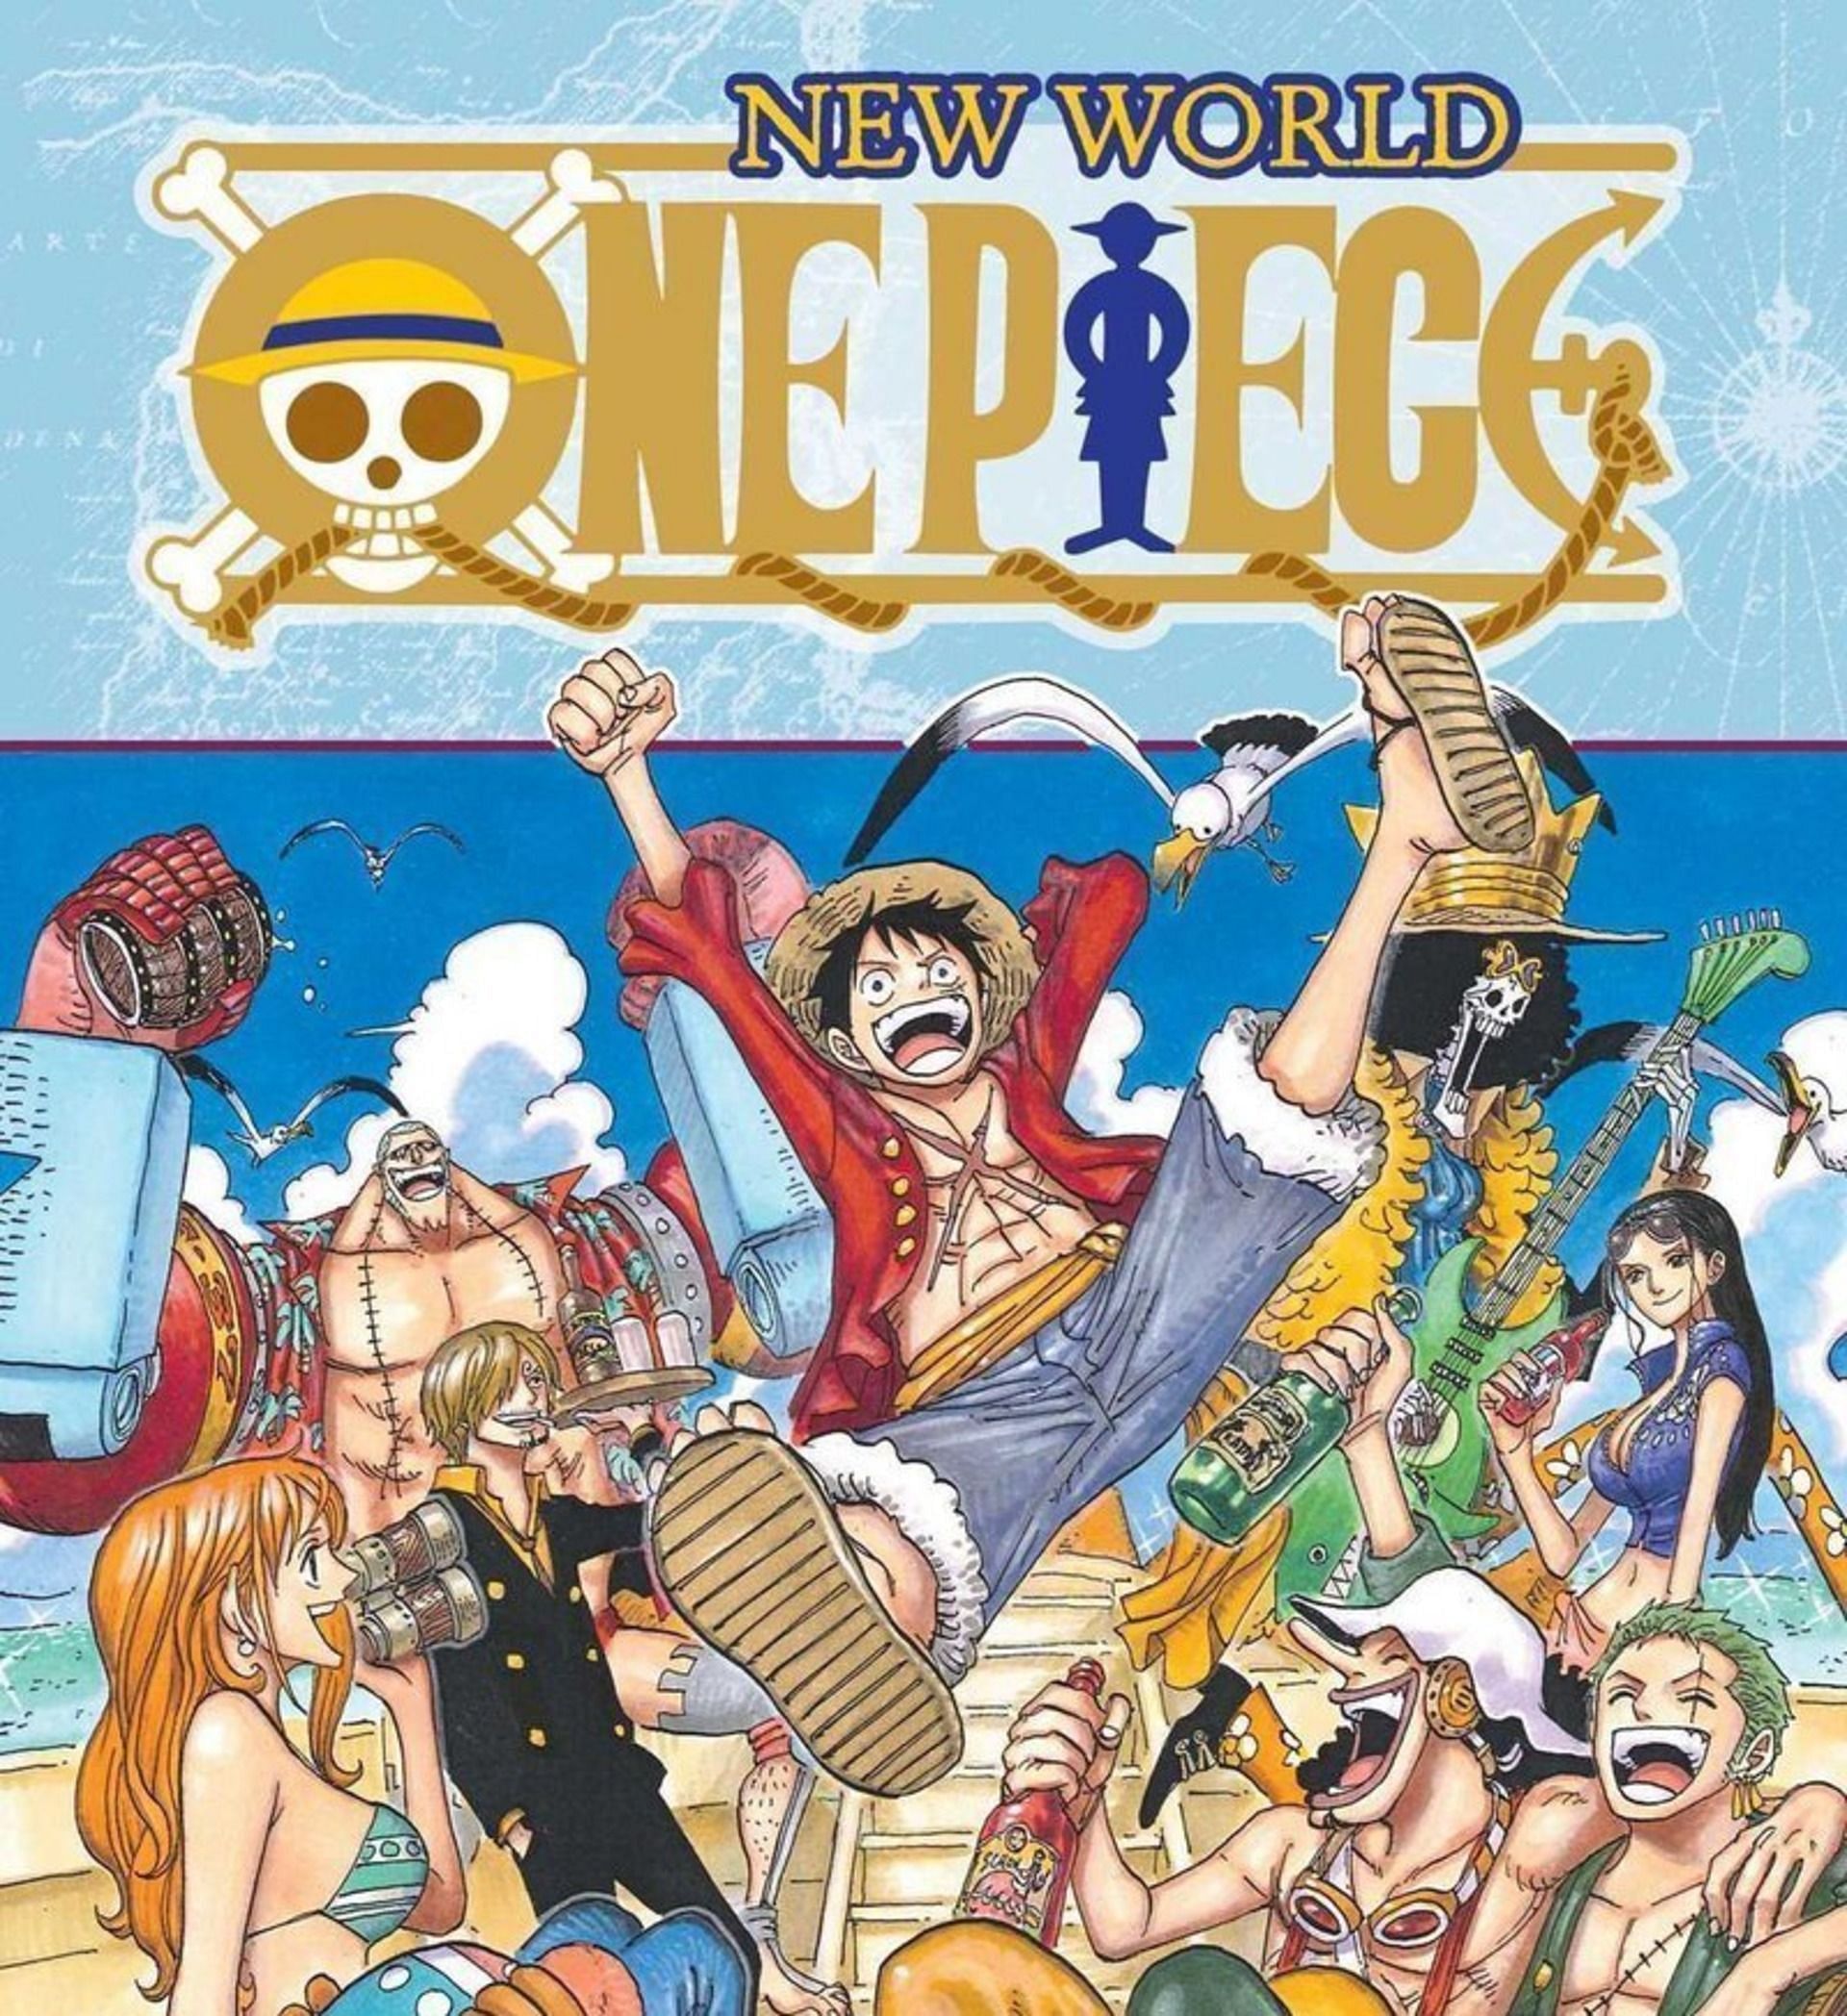 One Piece (Image via Eiichiro Oda, Shueisha)